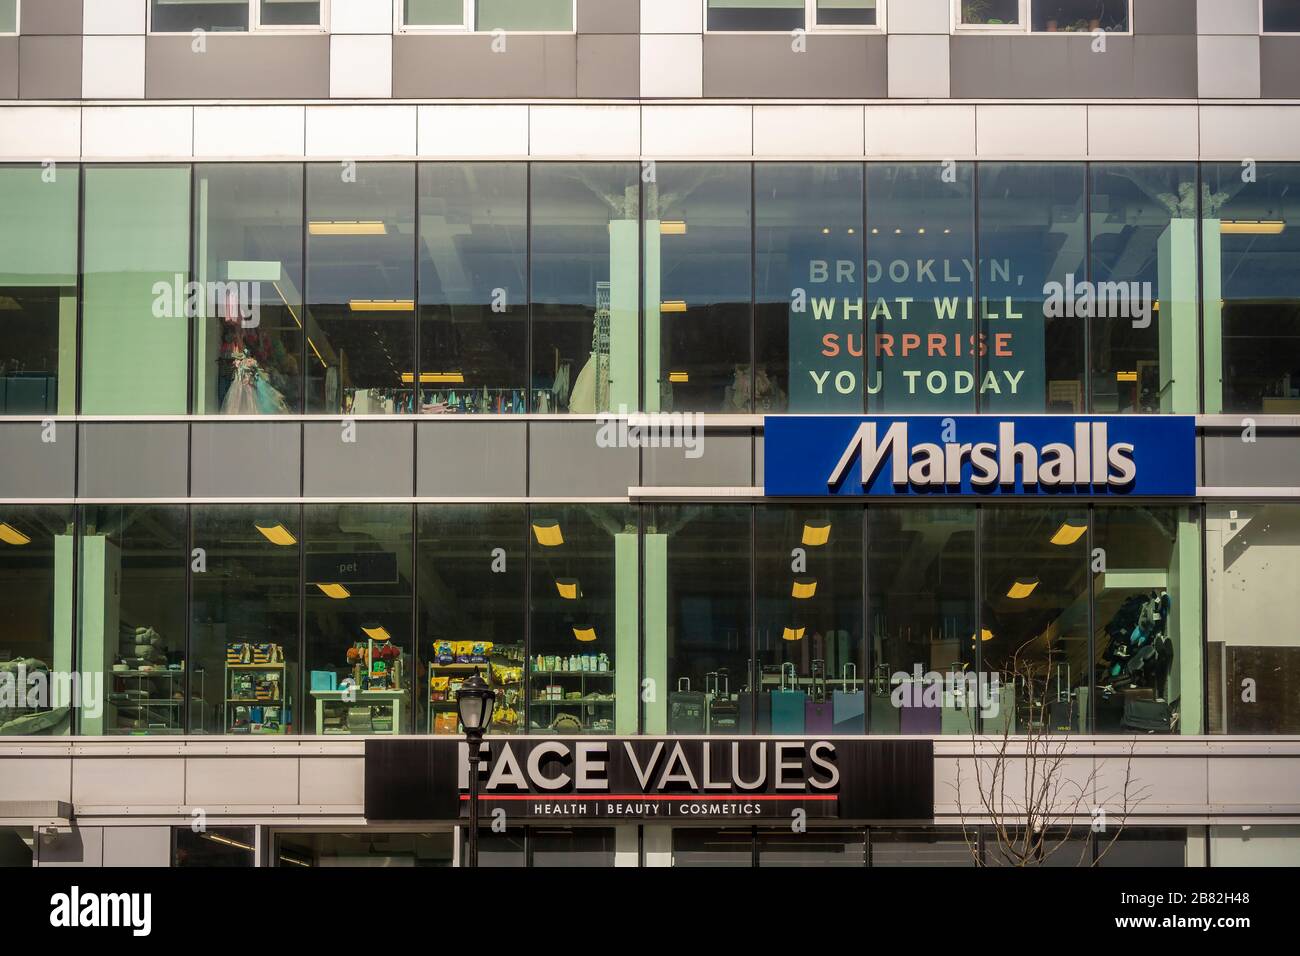 Marshalls Store in der Innenstadt von Brooklyn in New York am Samstag, 14. März 2020. Marshalls ist eine Marke der TJX-Unternehmen, Muttergesellschaft von Marshalls, T. J. Maxx, HomeGoods und anderen Marken. (© Richard B. Levine) Stockfoto